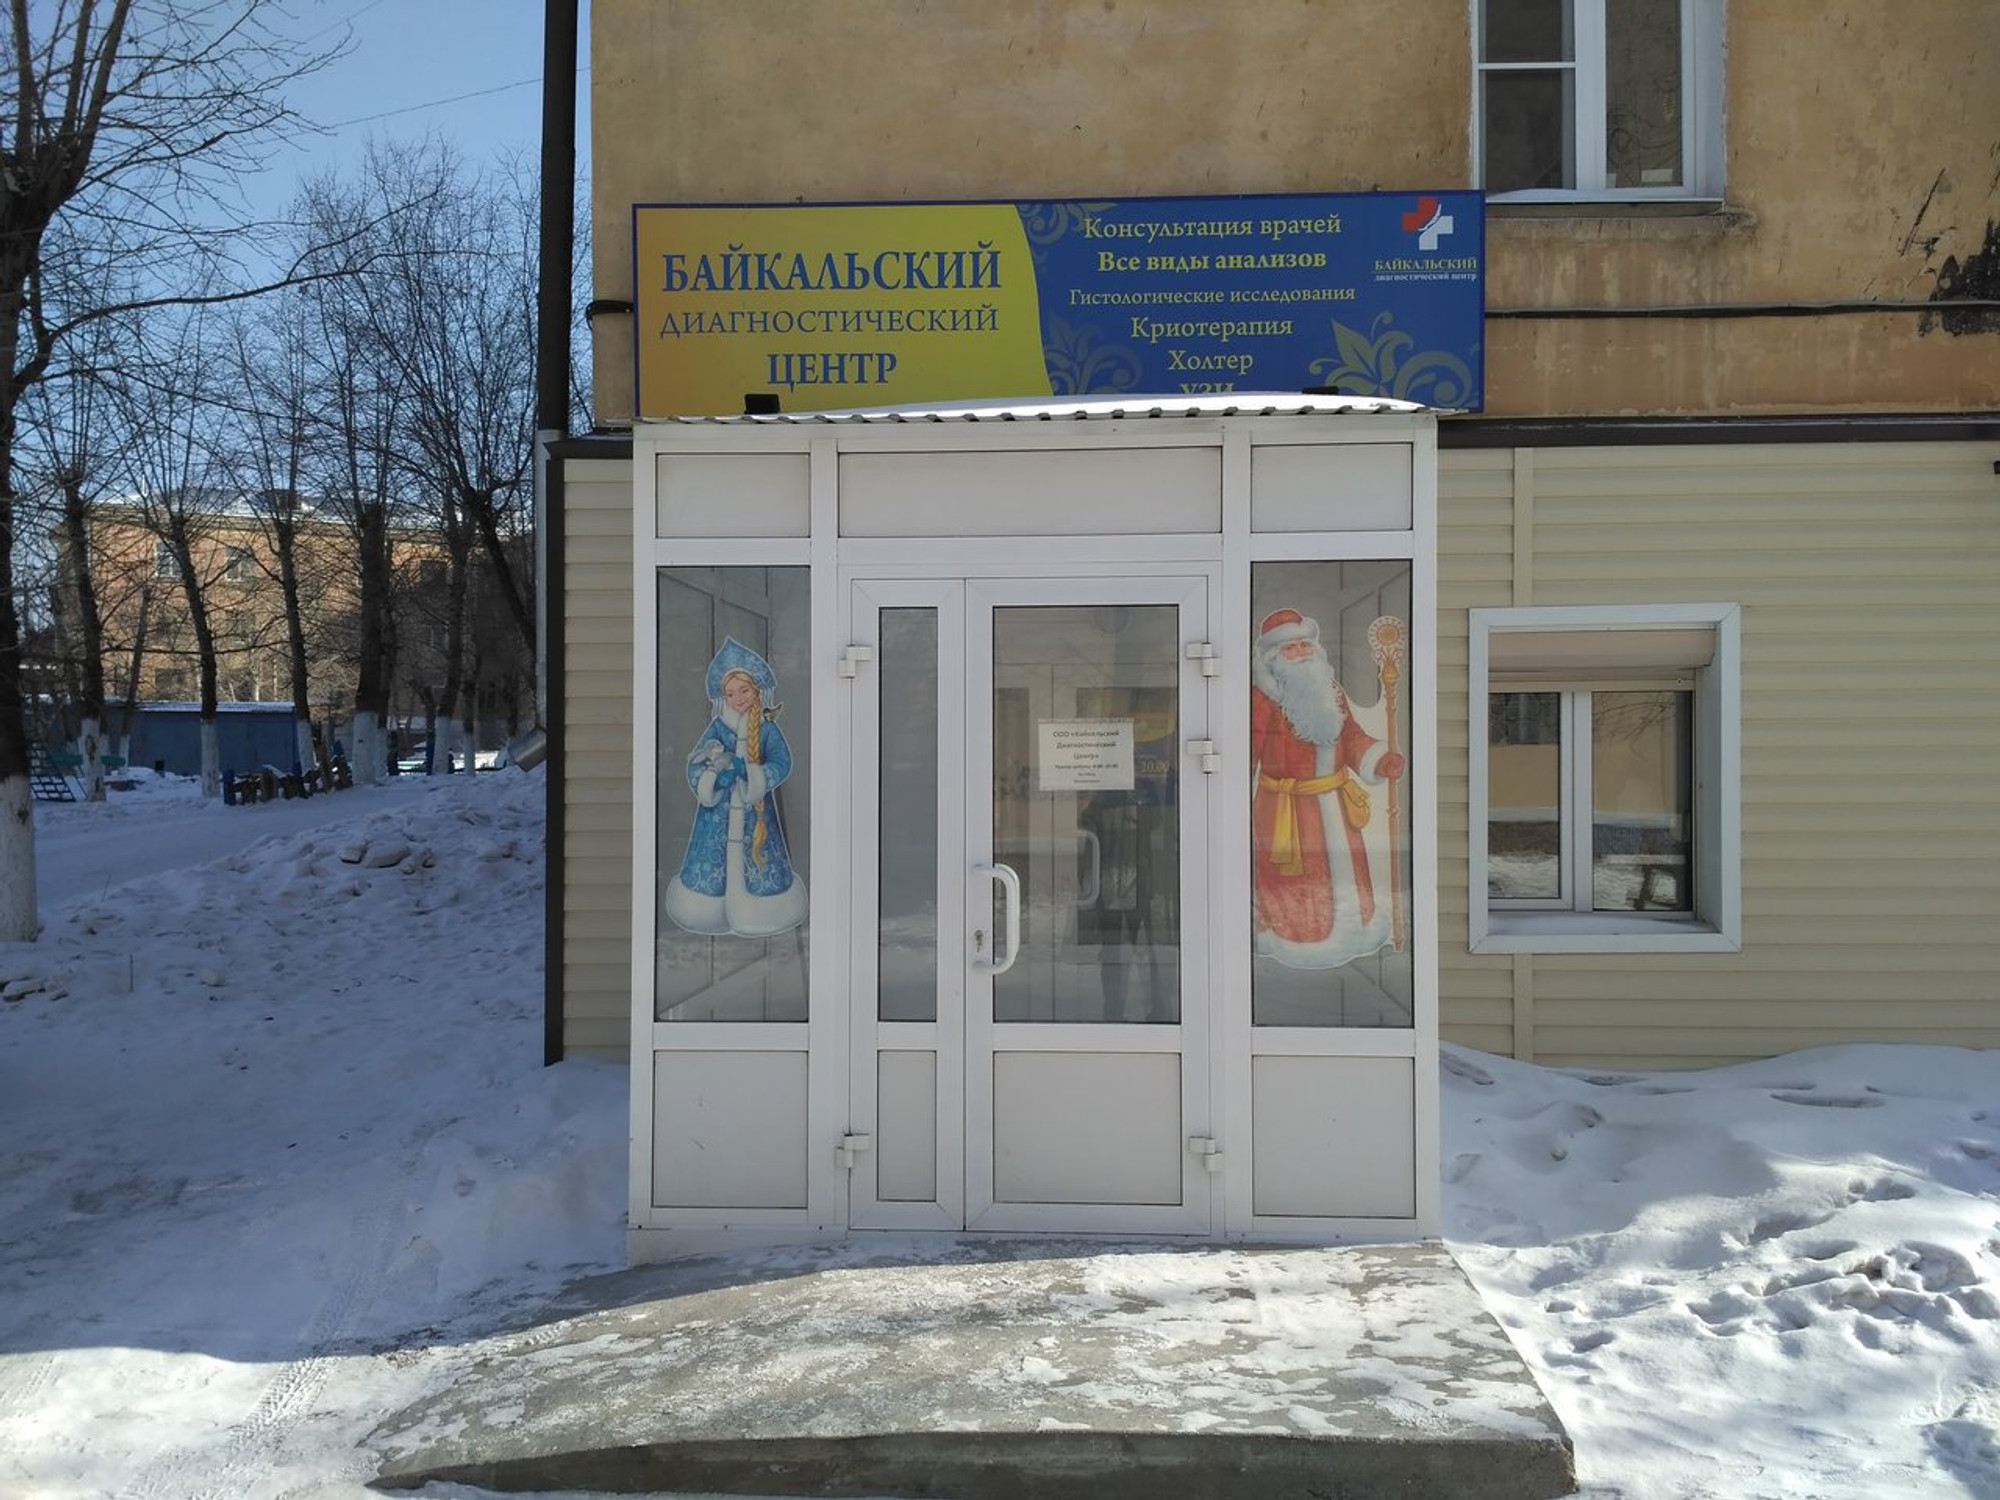 Байкальский диагностический центр (Медцентр, клиника )